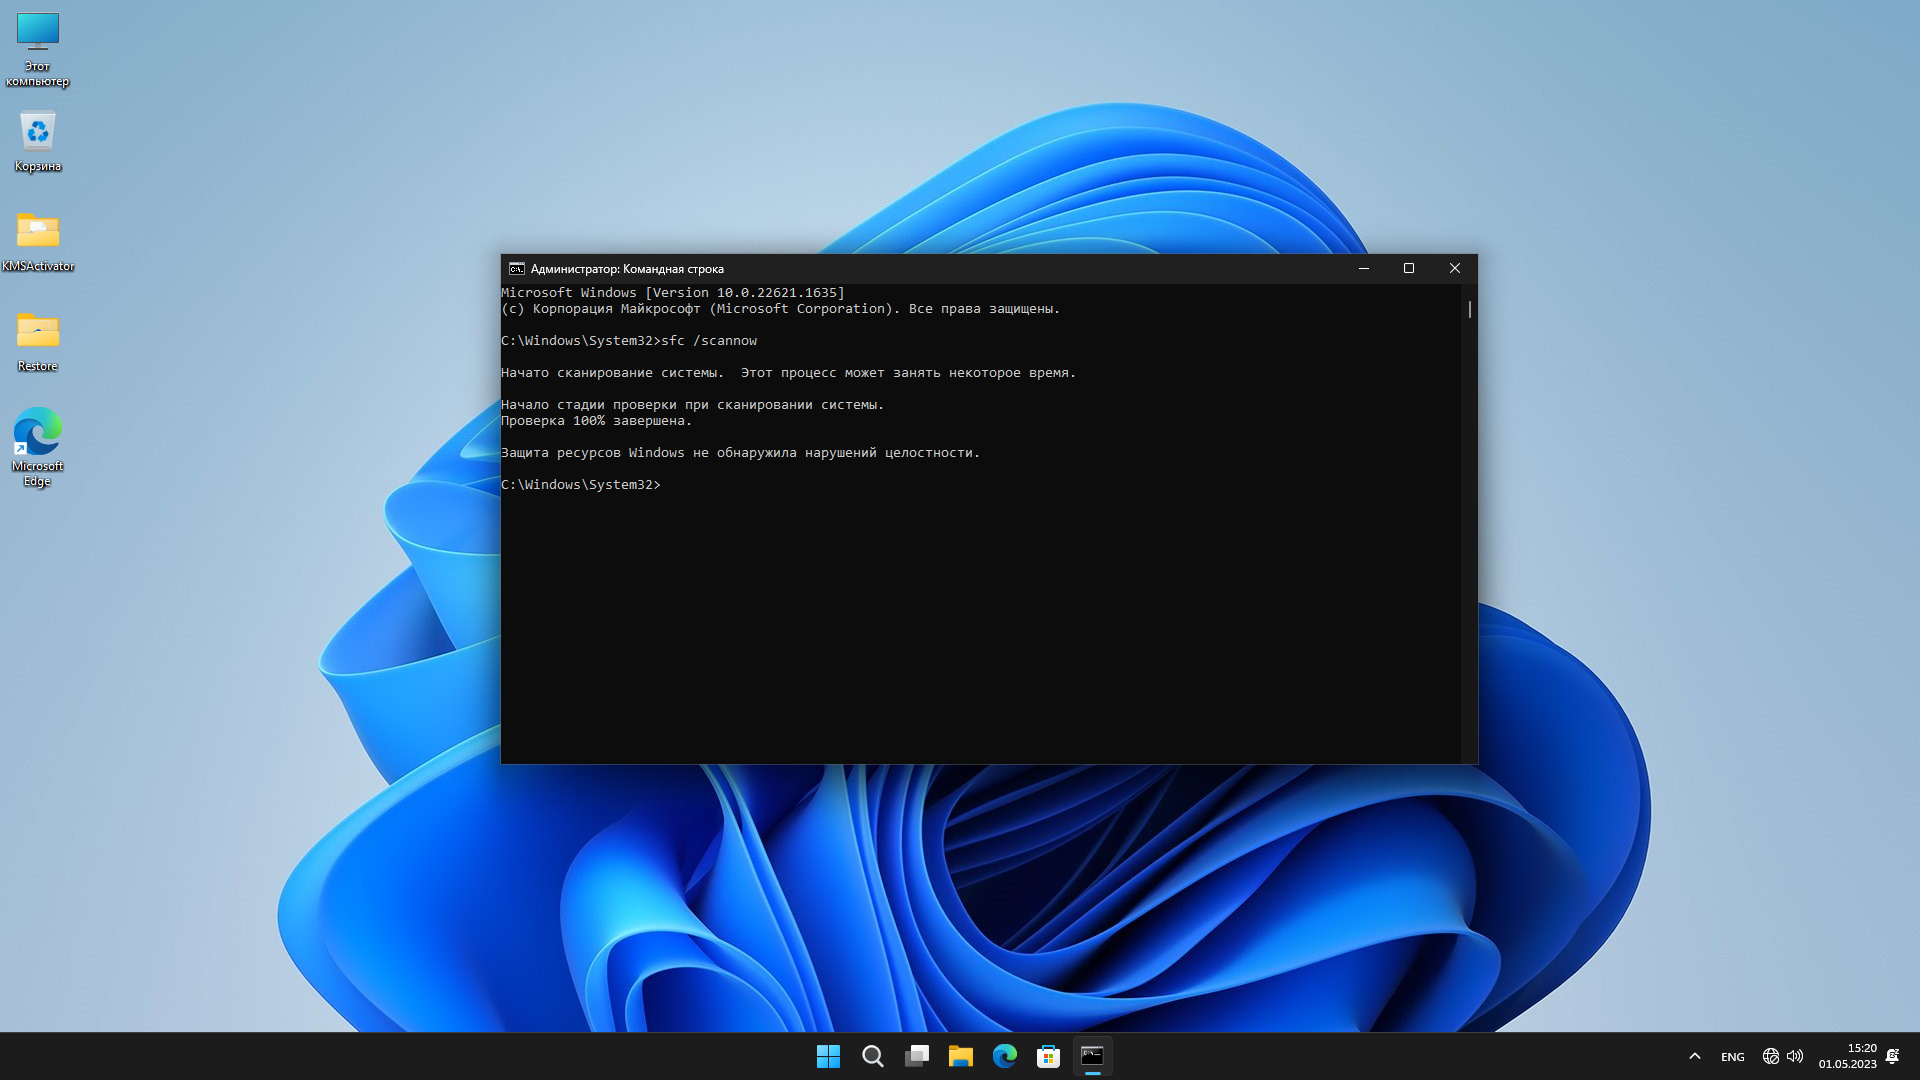 Windows 11 Pro 22H2 (build 22621.1635) + Office 2021 x64 by BoJlIIIebnik [Ru/En]